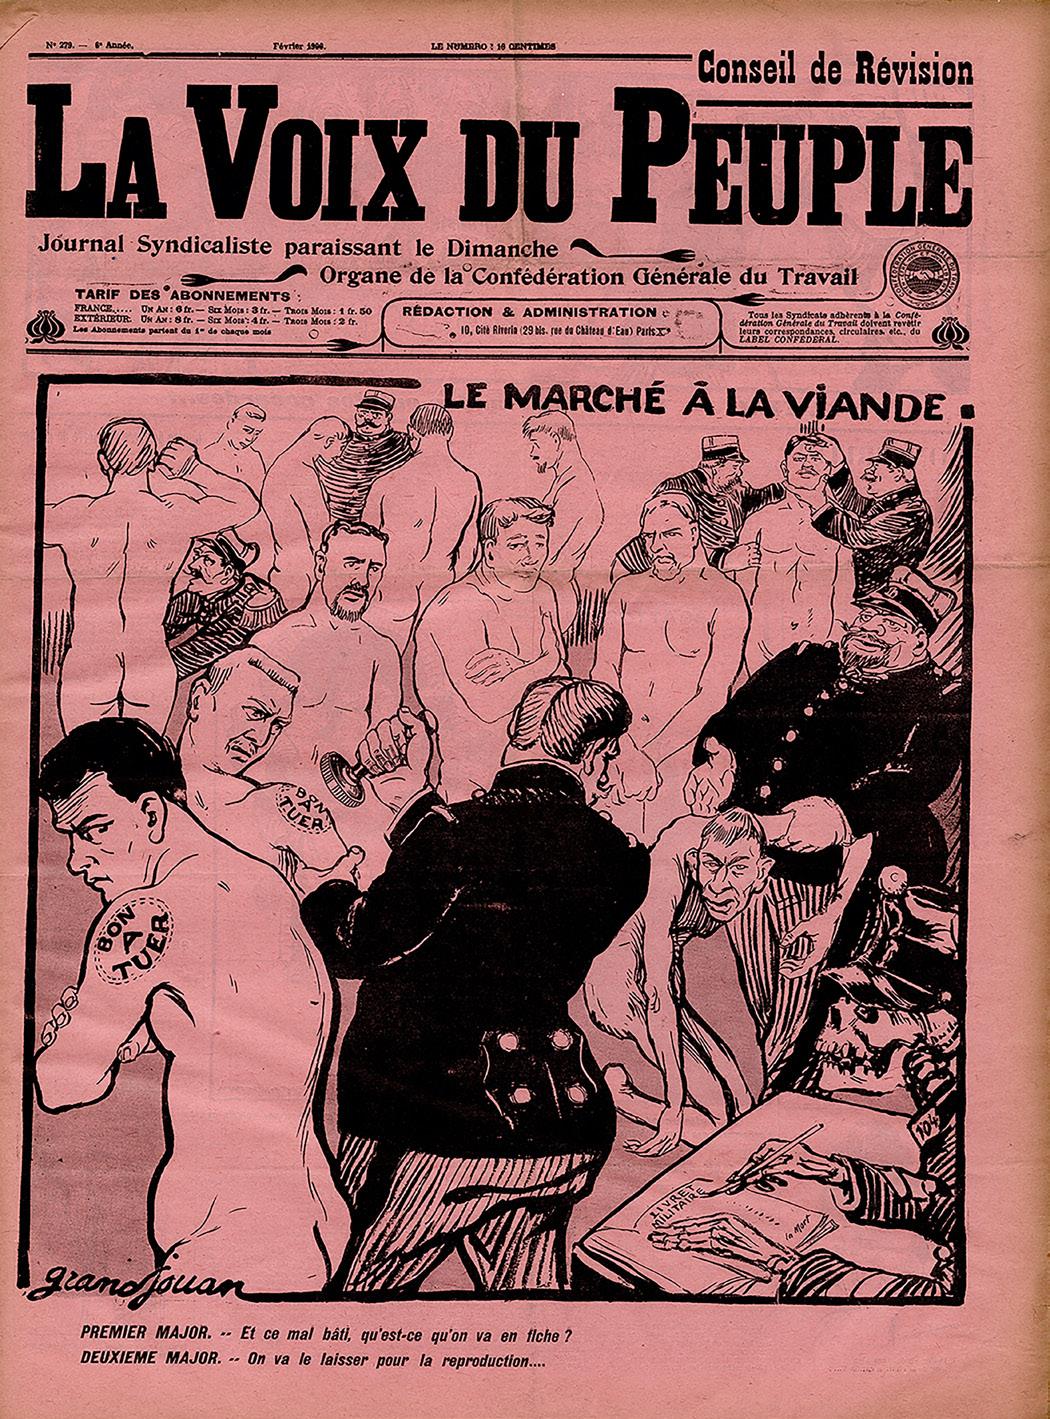 Imagen 4.  Jules-Félix Grandjouan. Le Marché à la  viande. En La Voix du Peuple,  París, febrero 1906. IISG BG D23/493.